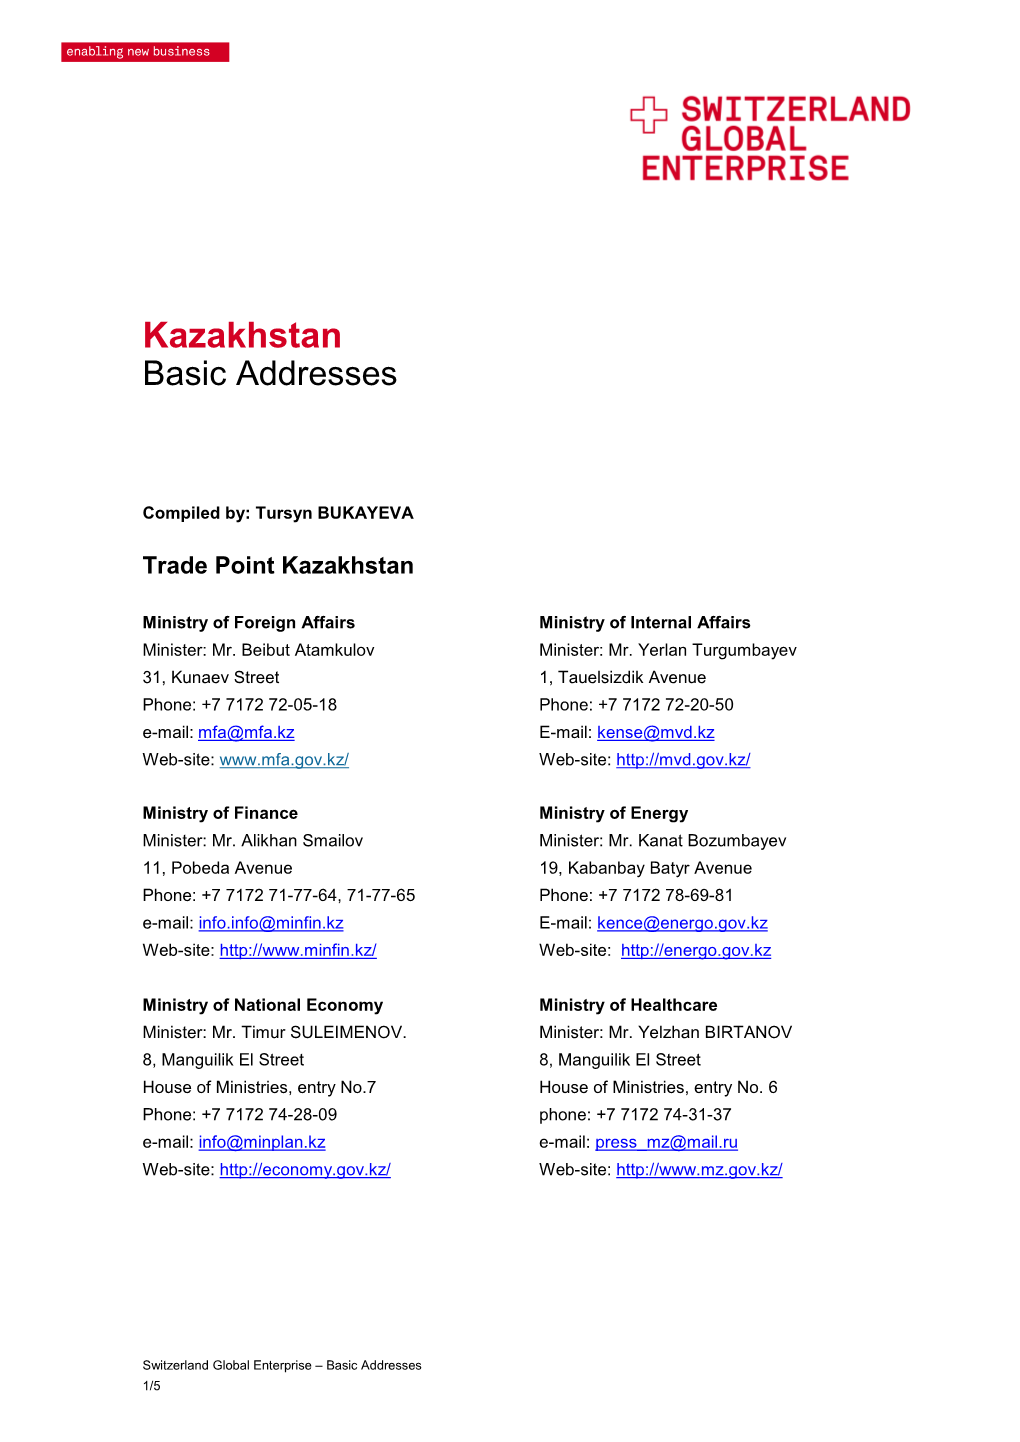 Kazakhstan Basic Addresses